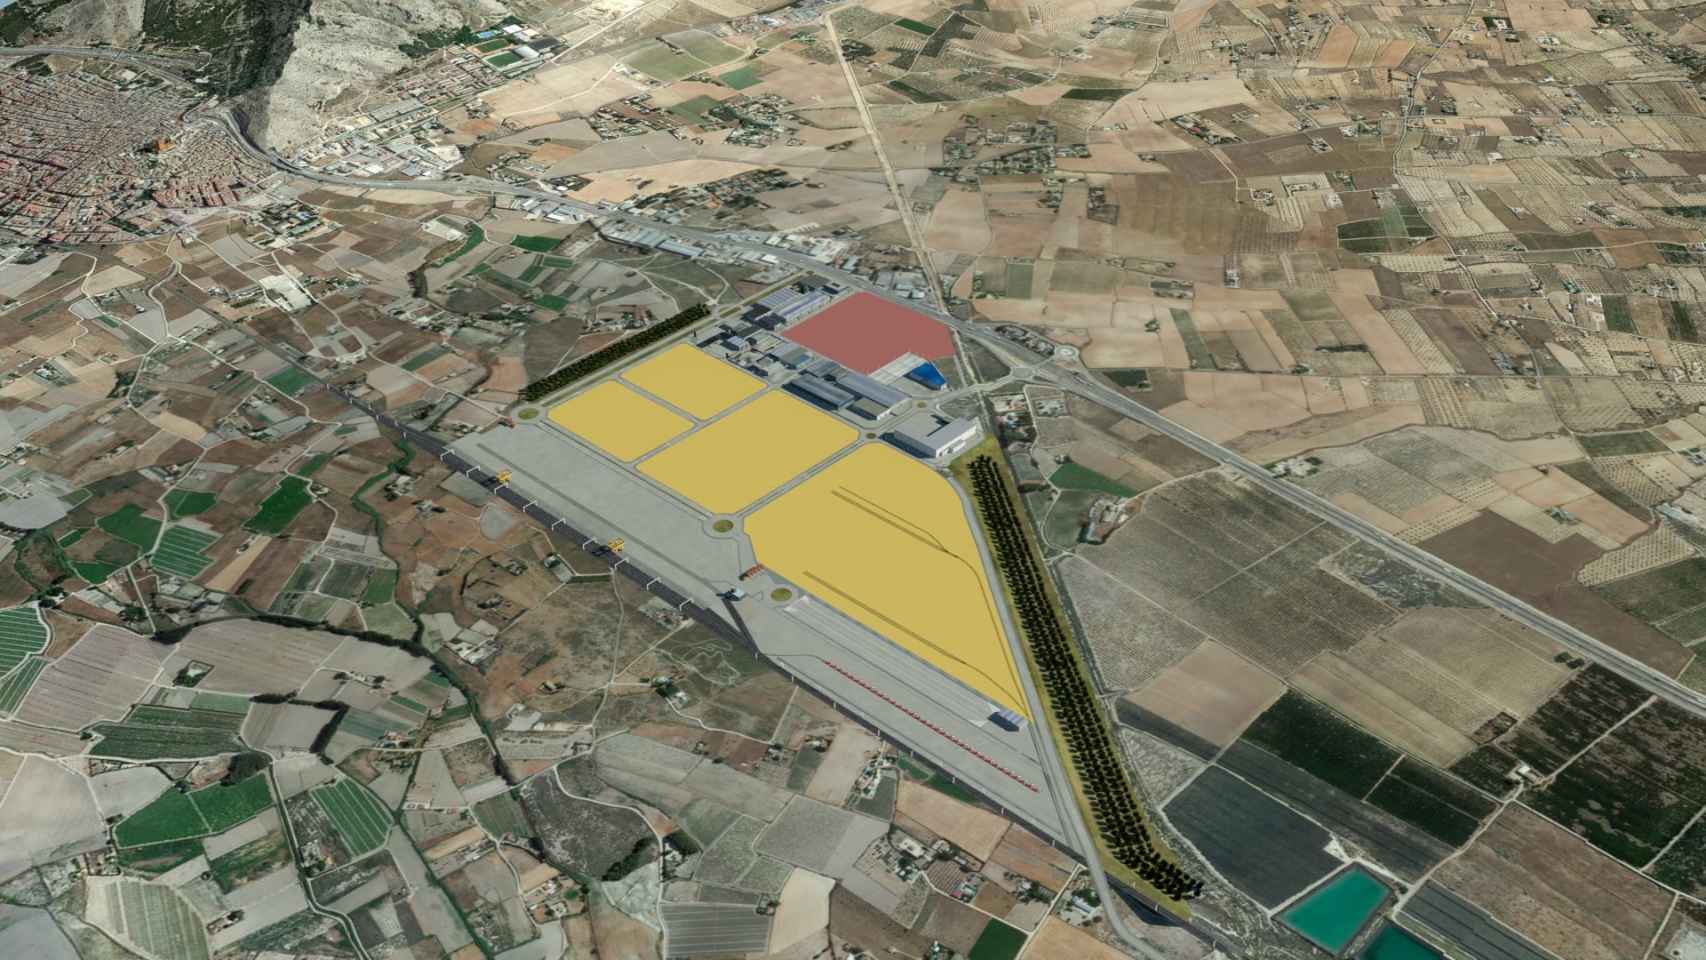 Vista aérea del proyecto de puerto seco en Villena.